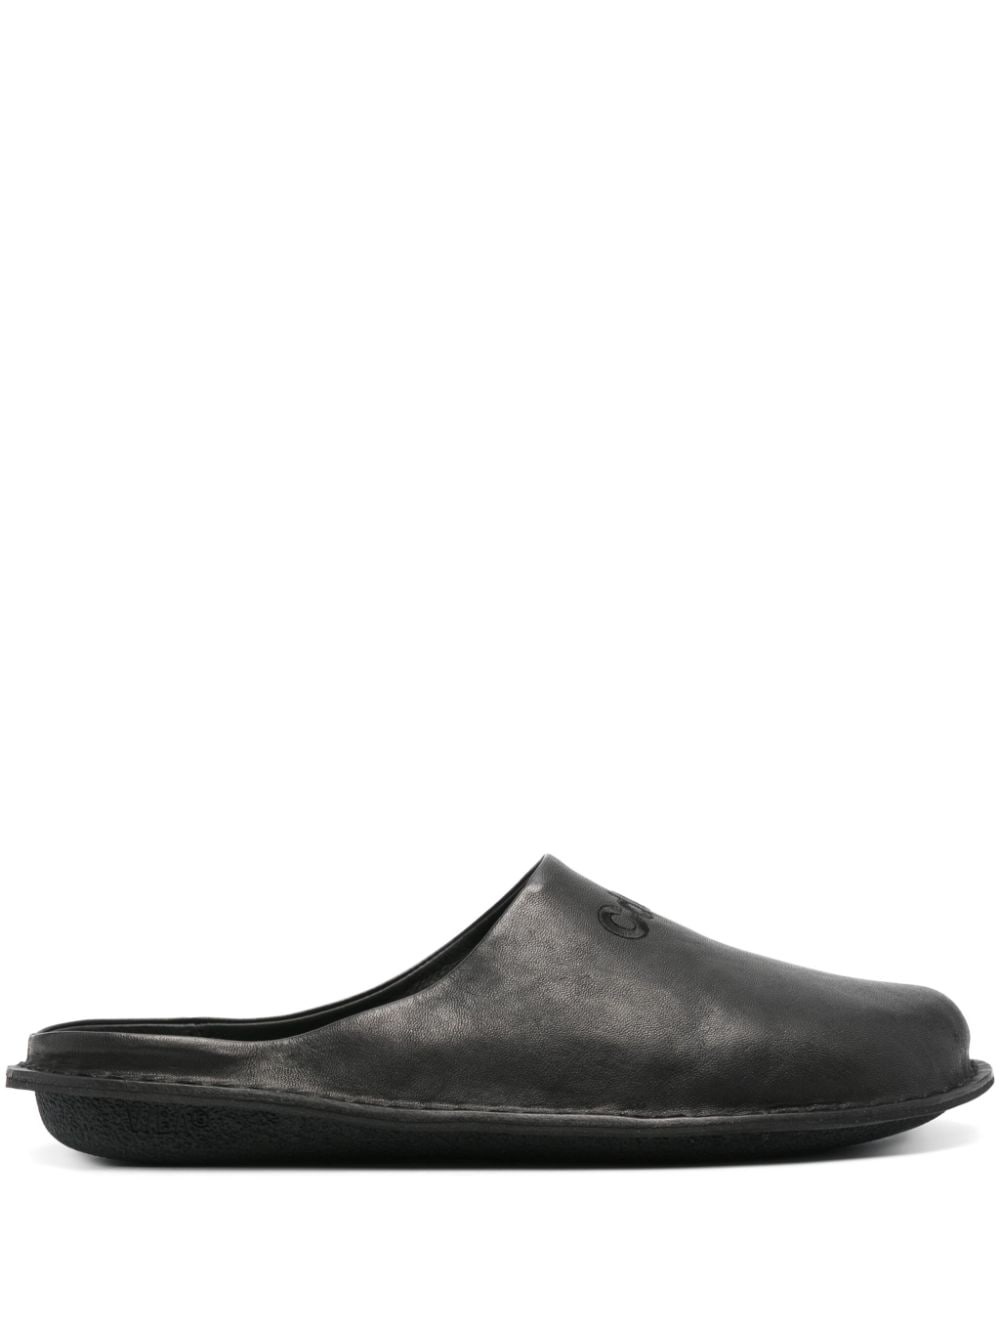 Comme des Garçons Homme logo-embroidered leather slippers - Black von Comme des Garçons Homme